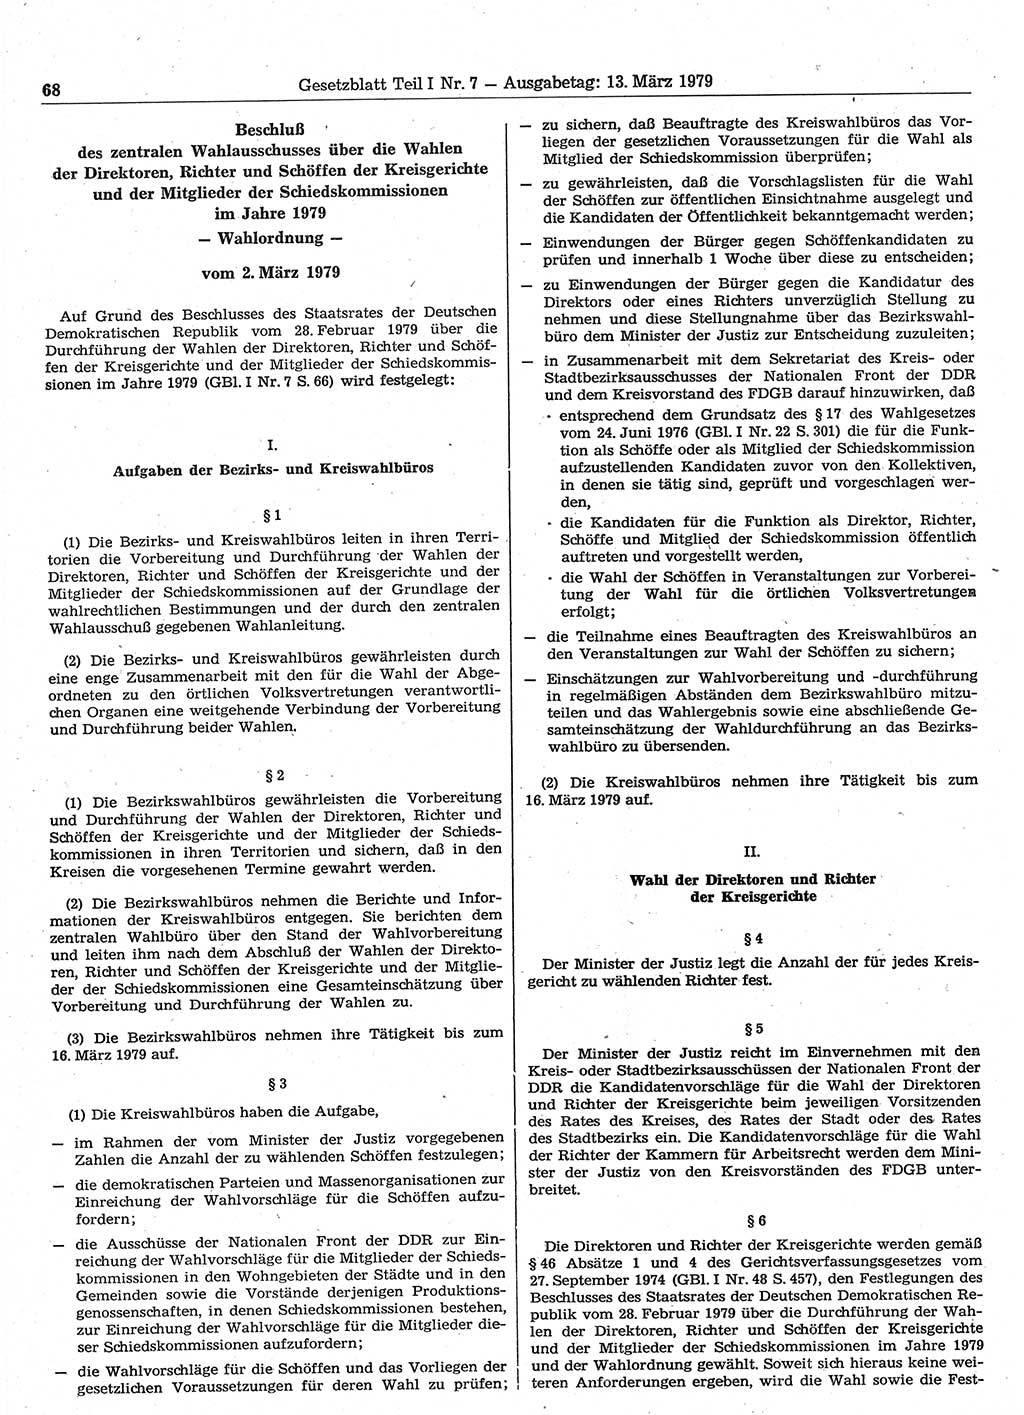 Gesetzblatt (GBl.) der Deutschen Demokratischen Republik (DDR) Teil Ⅰ 1979, Seite 68 (GBl. DDR Ⅰ 1979, S. 68)